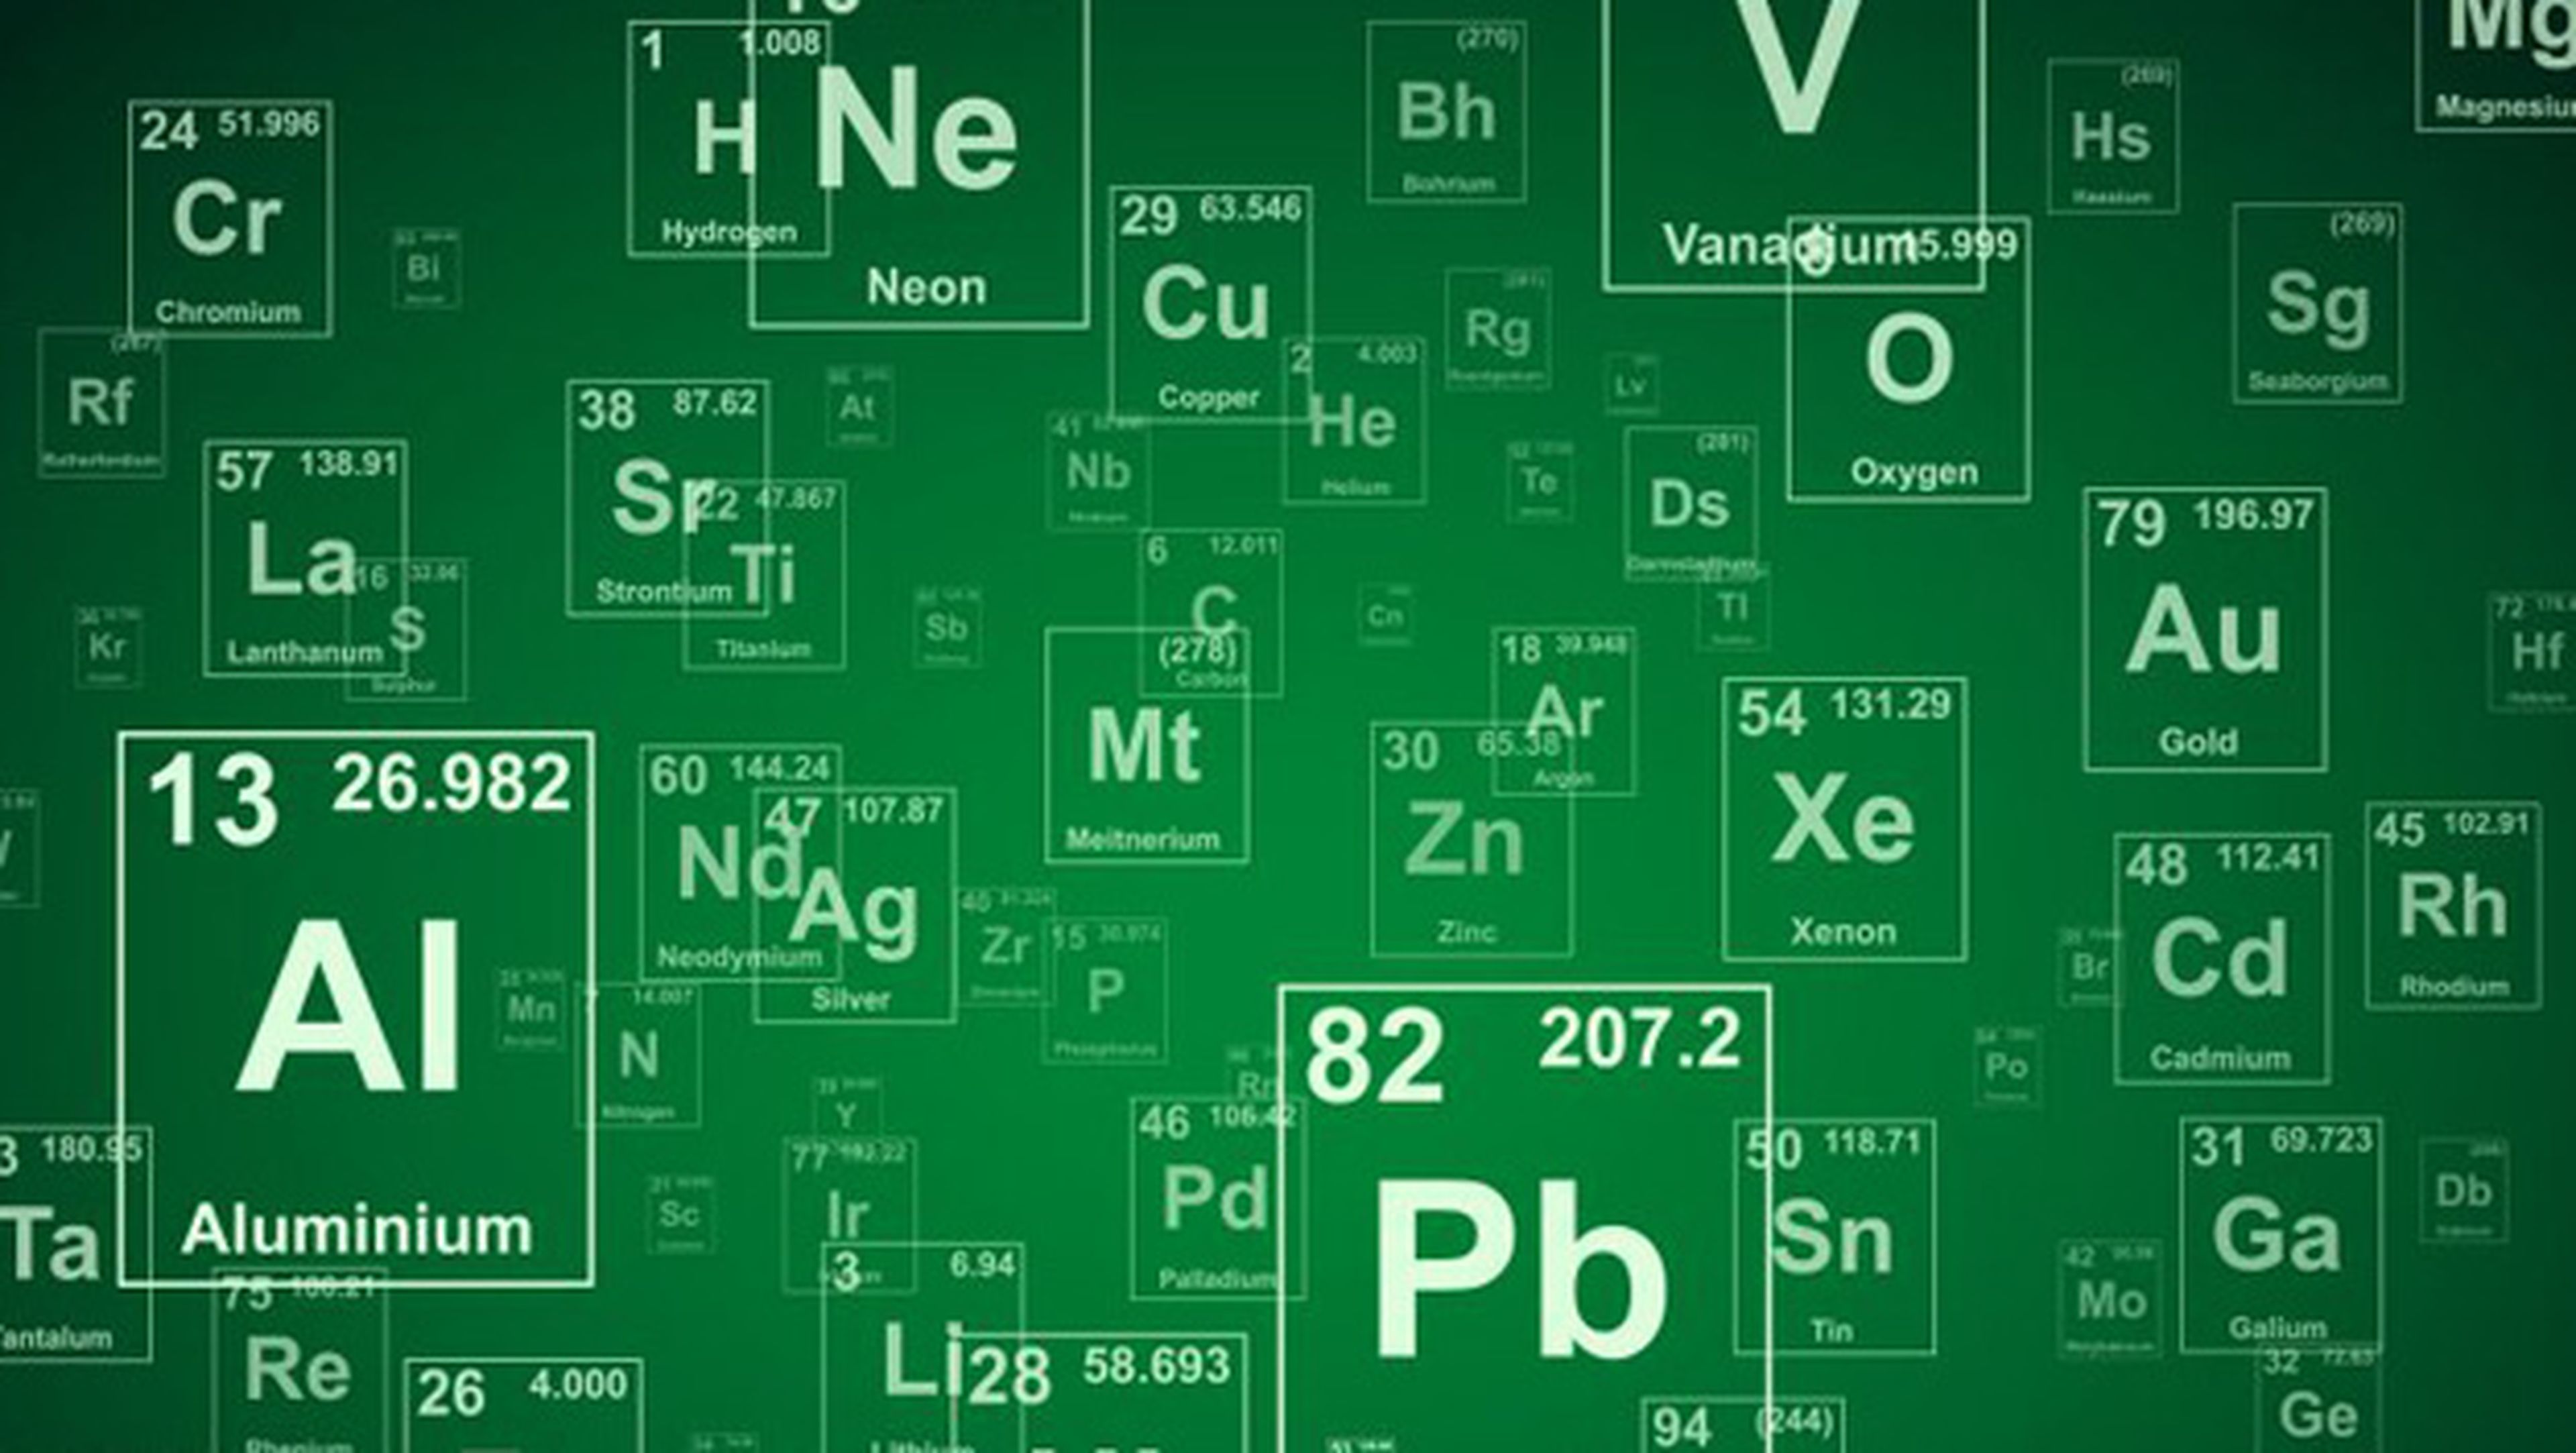 Nuevos elementos para la tabla periódica